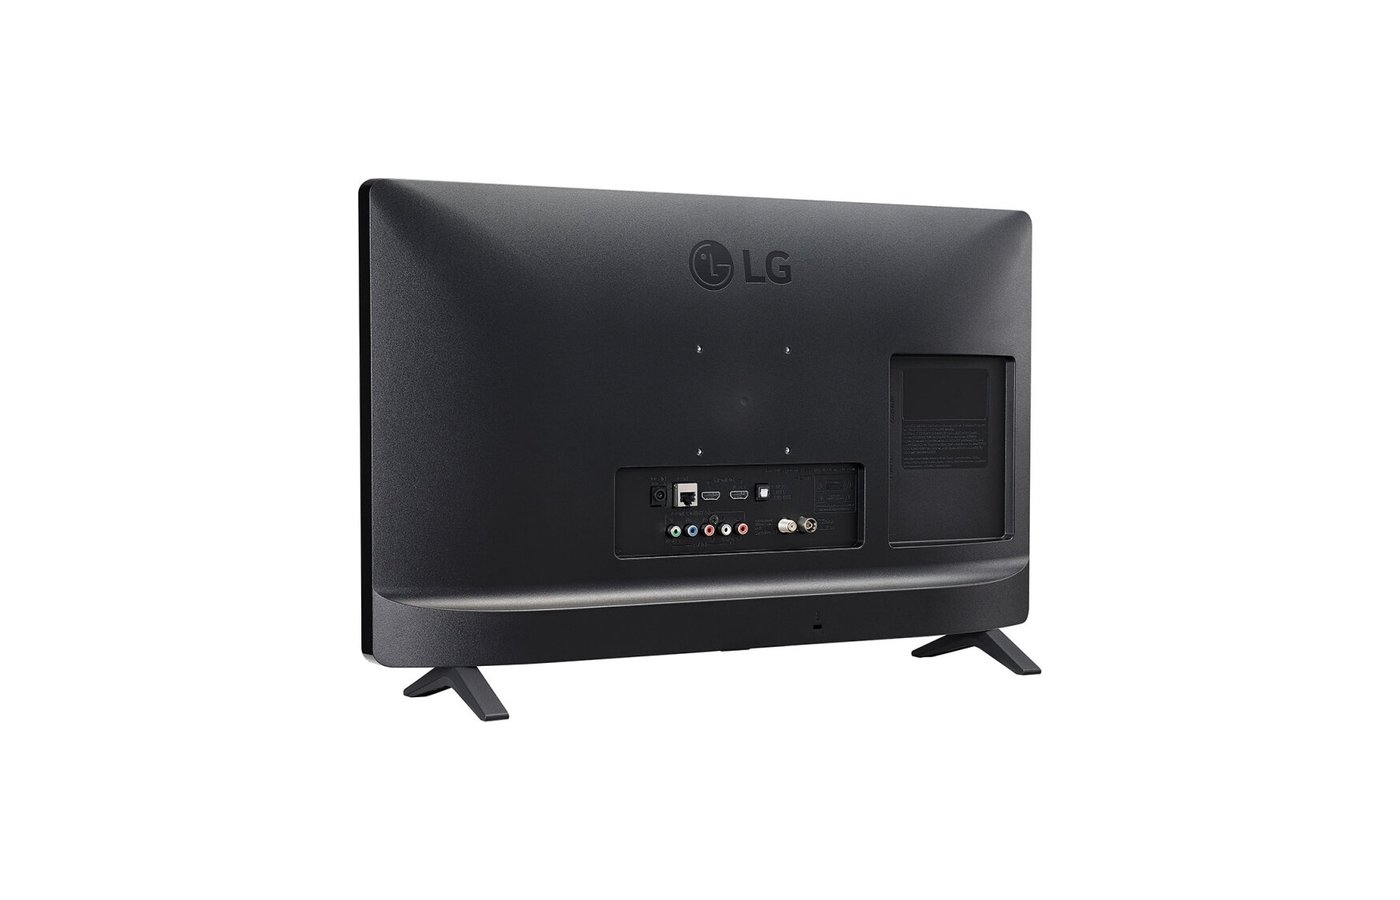 LG 24tn520s-PZ. Телевизор 24" LG 24tn520s-PZ. LG 24tn520s-PZ Smart TV. LG 28tq525s-PZ.